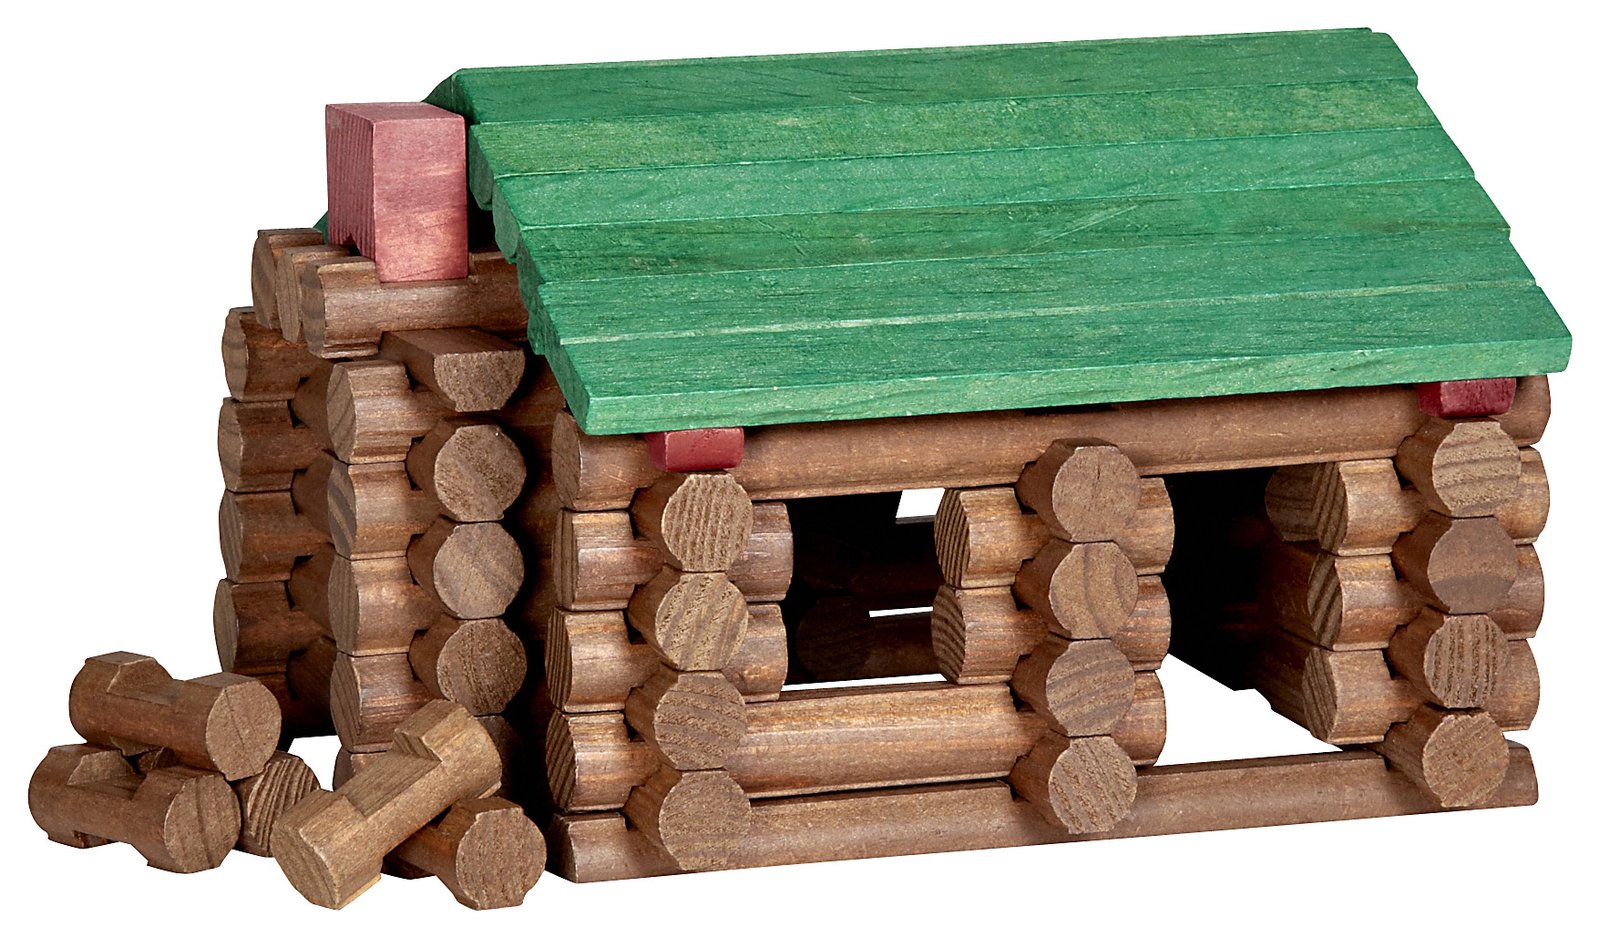 T me buy logs. Линкольн логс. Линкольн логс конструктор. Linkoln logs игрушка. Игрушки капсулах деревянных.